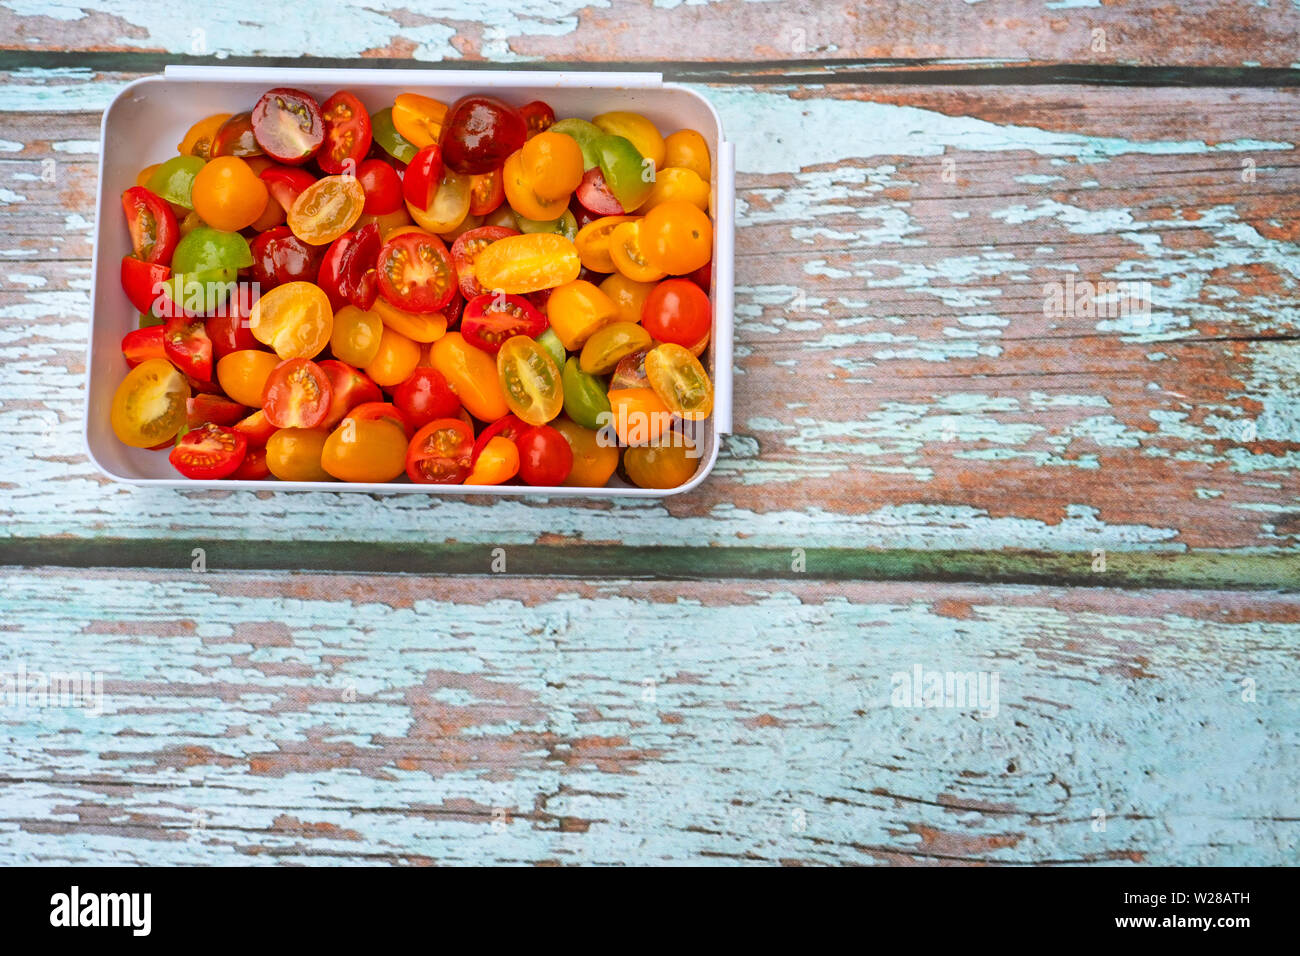 Coloratissimo mix di ciliegia e di mosti di uve i pomodori, tagliate a metà e posto in plastica bianca terrina, su uno sfondo di legno. Foto Stock